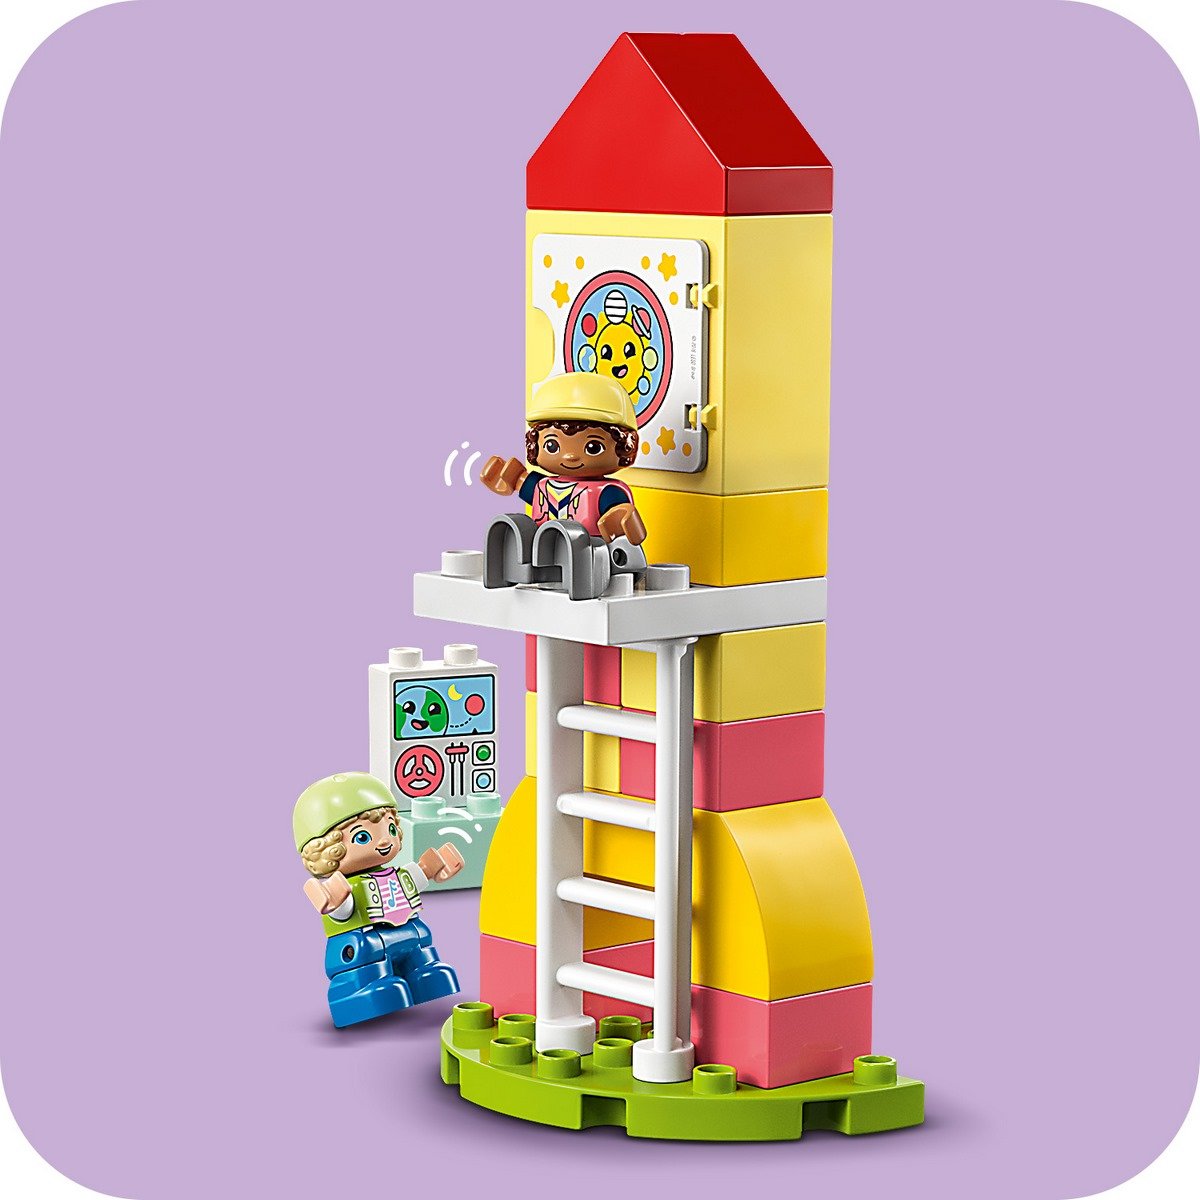 LEGO Duplo 10991 pas cher, L'aire de jeux des enfants